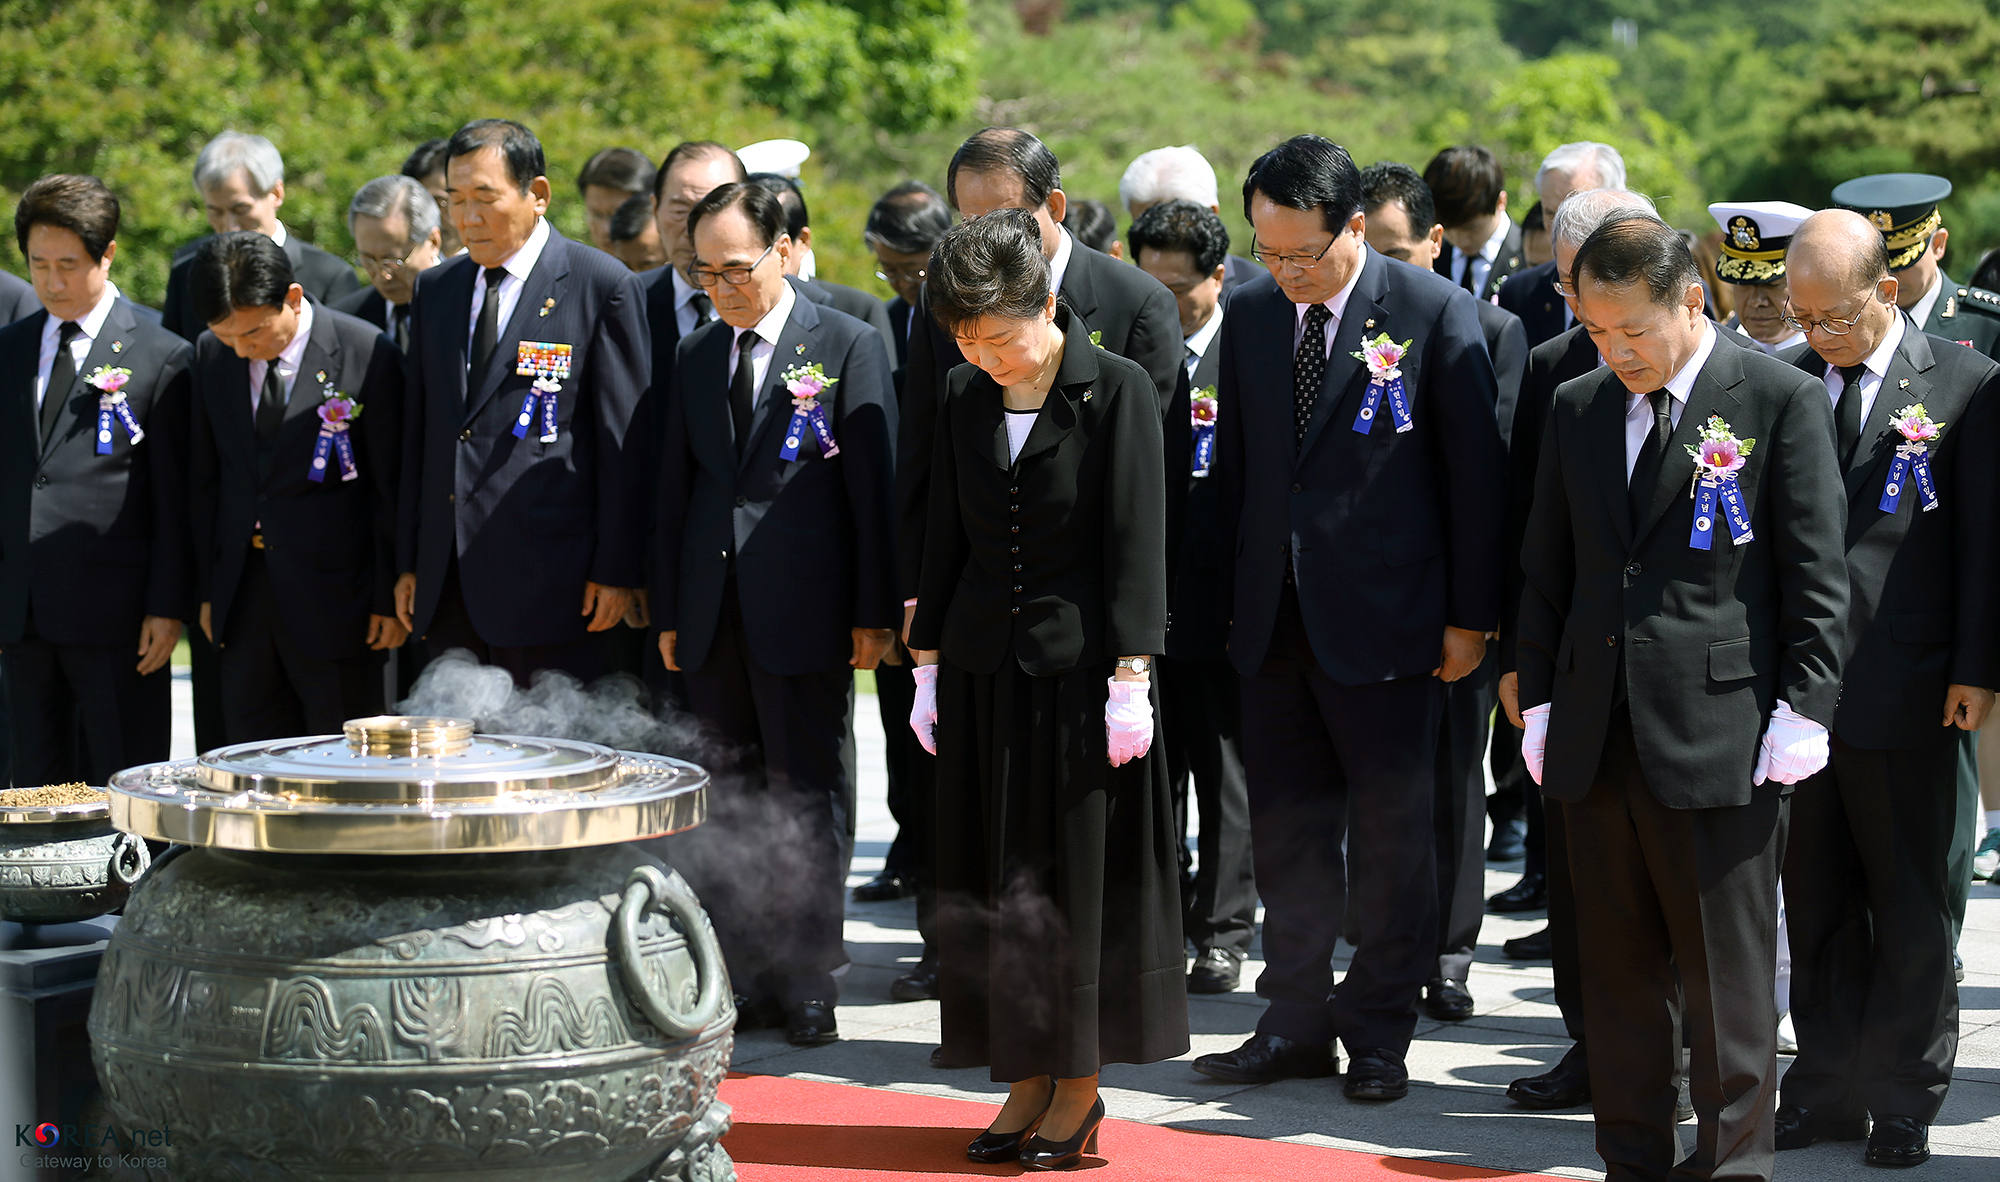 Přečtete si více ze článku Památka padlých v boji: Jižní Korea si připomíná kruté události války a životy jejích obětí